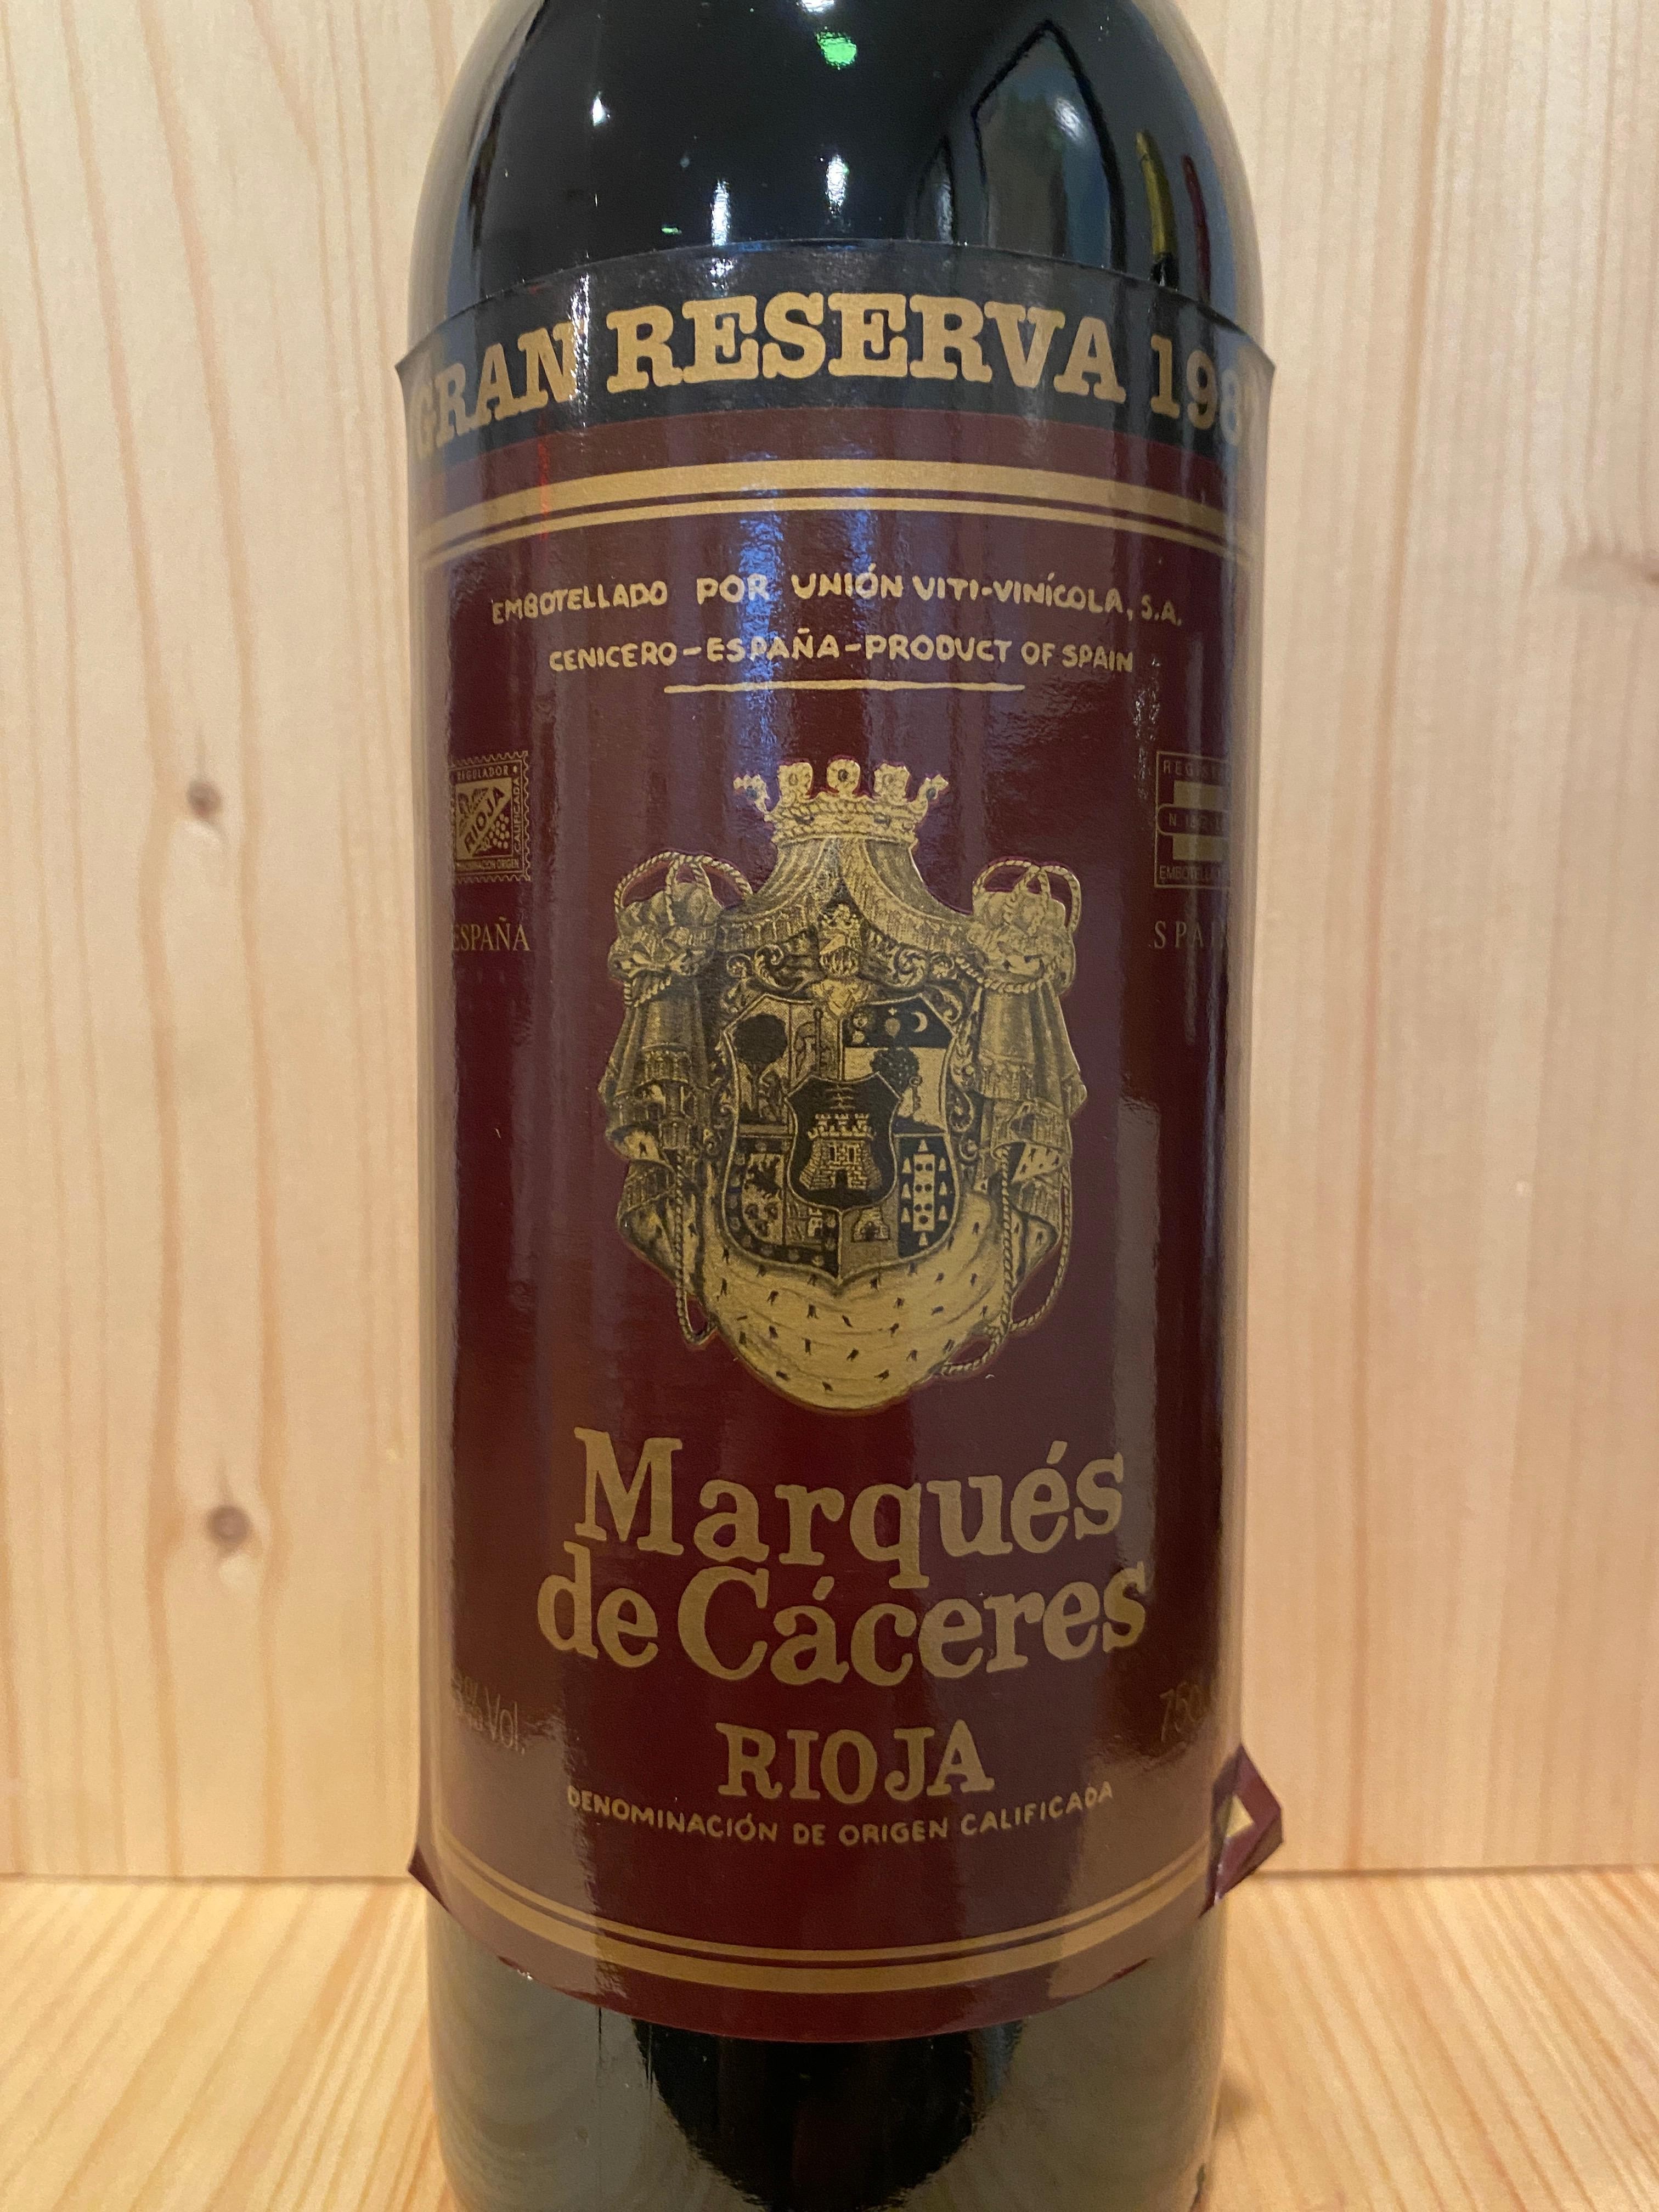 Marqués de Cáceres Rioja Gran Reserva 1987: Rioja, Spain